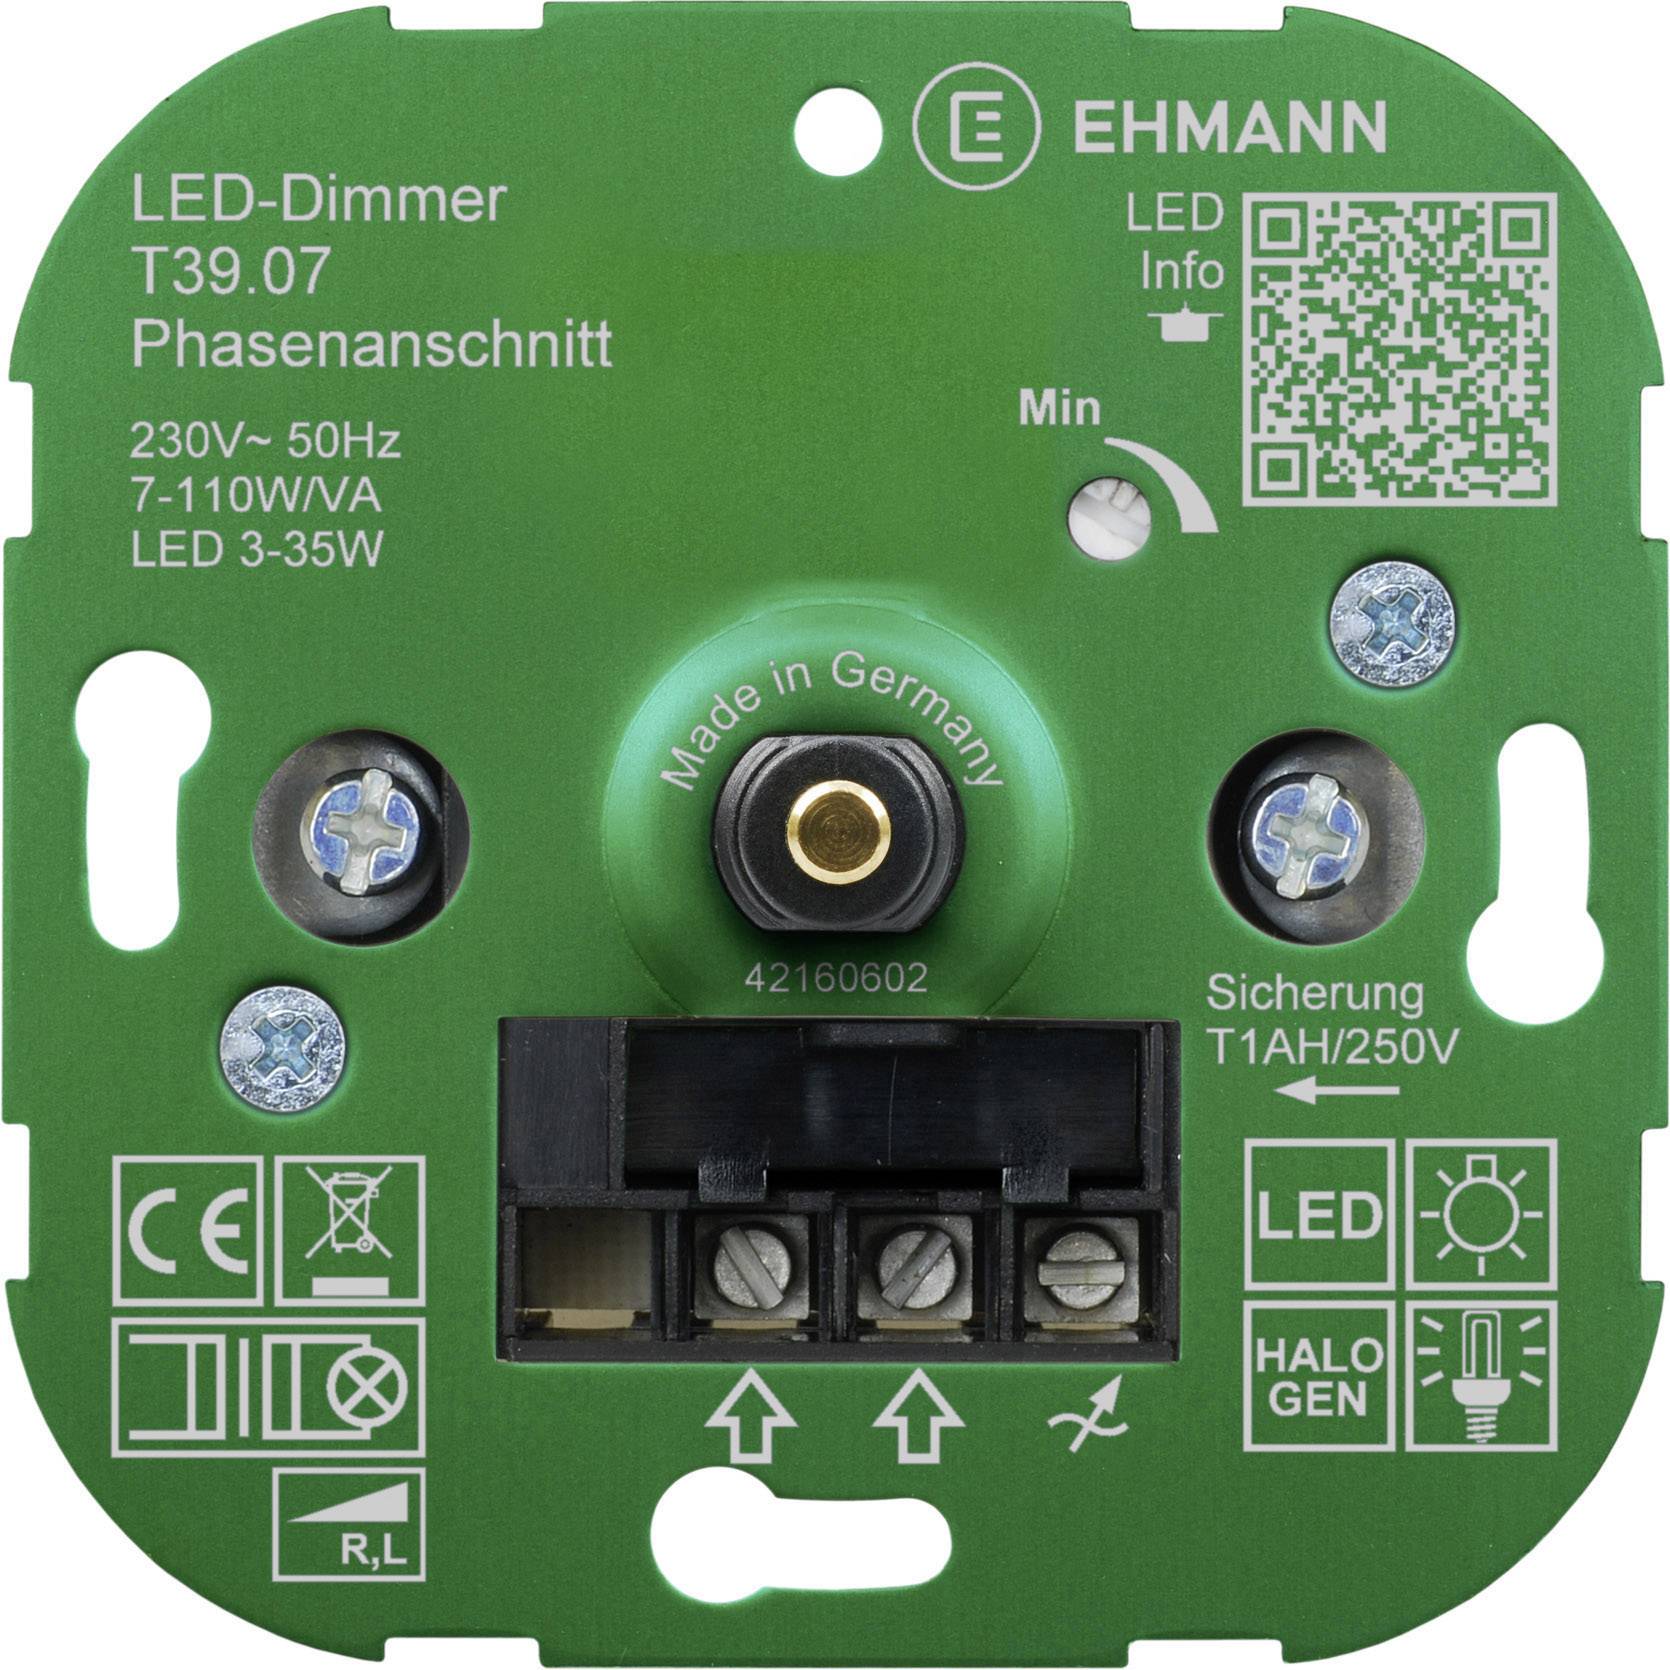 EHMANN Unterputz Dimmer Geeignet für Leuchtmittel: Energiesparlampe, LED-Lampe, Halogenlampe, Glühla